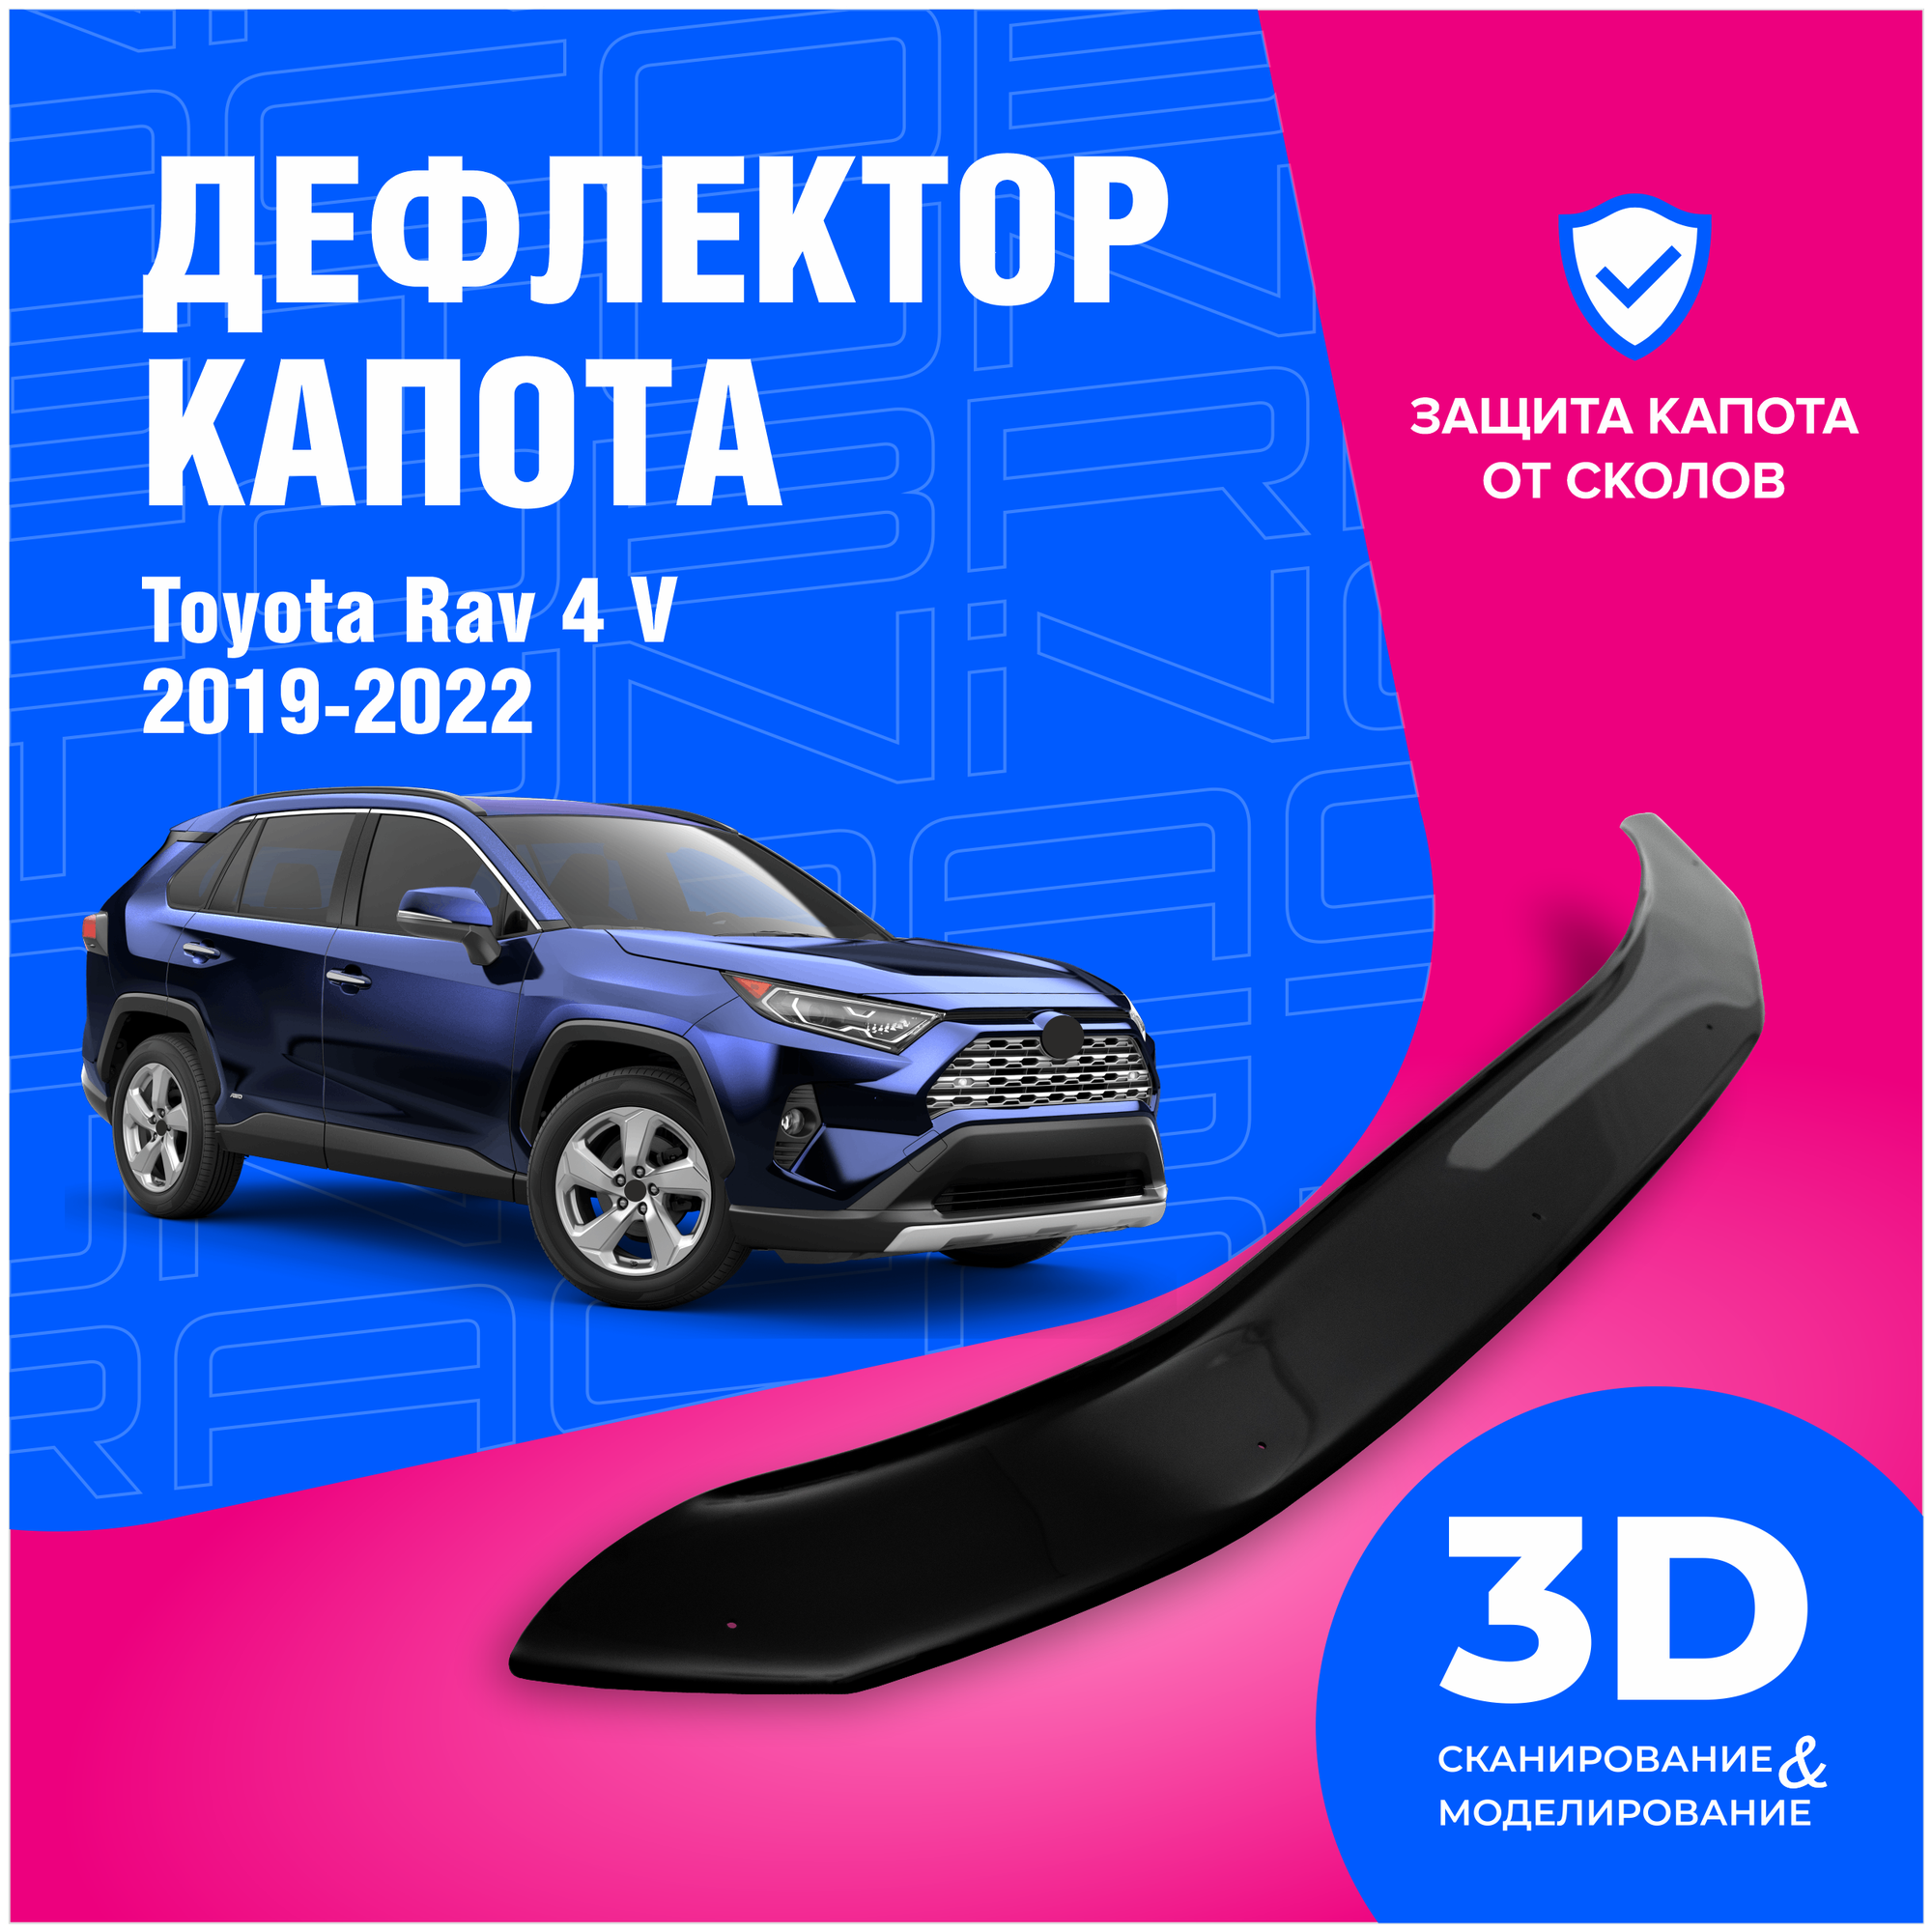 Дефлектор капота Toyota Rav 4 (Тойота Рав 4) V 2019-2022 (мухобойка) CobraTuning